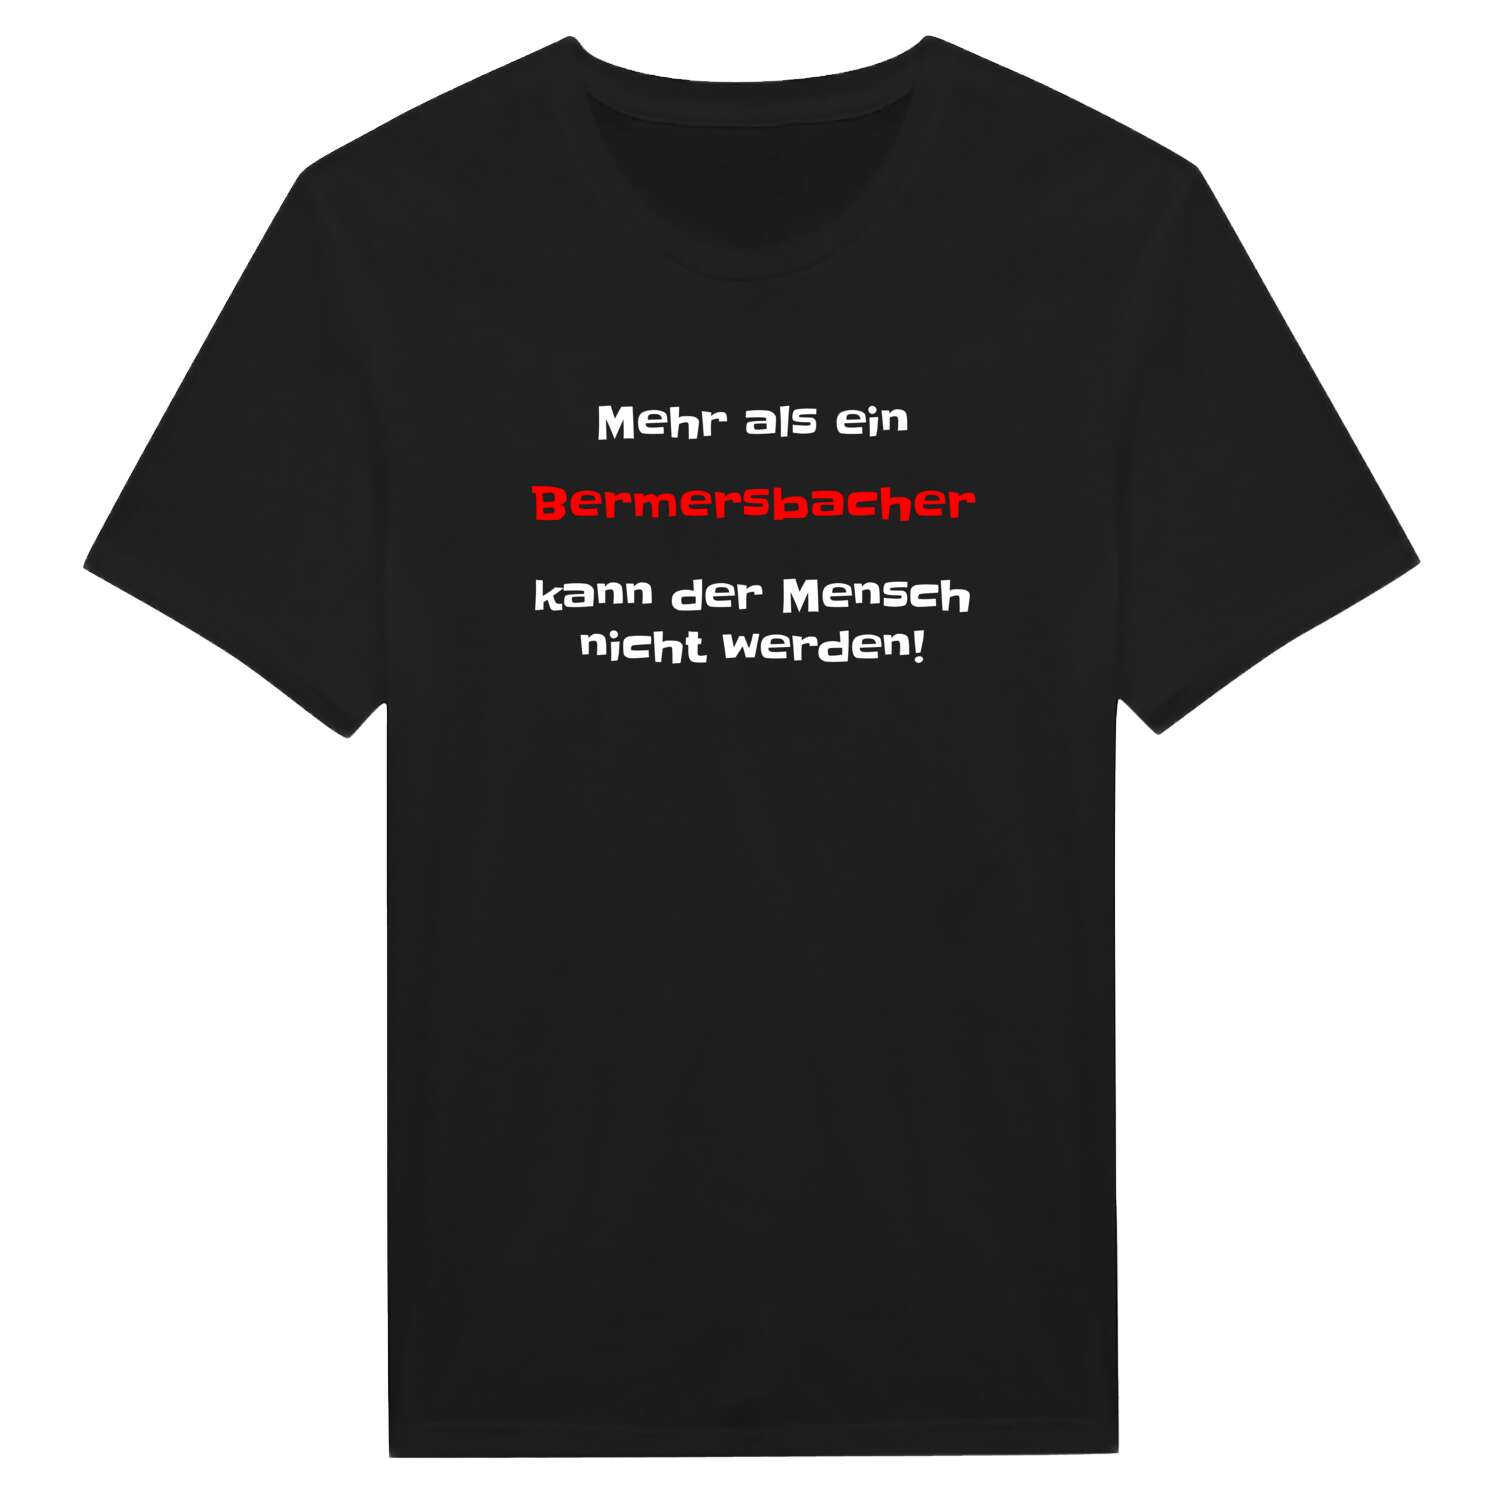 Bermersbach T-Shirt »Mehr als ein«